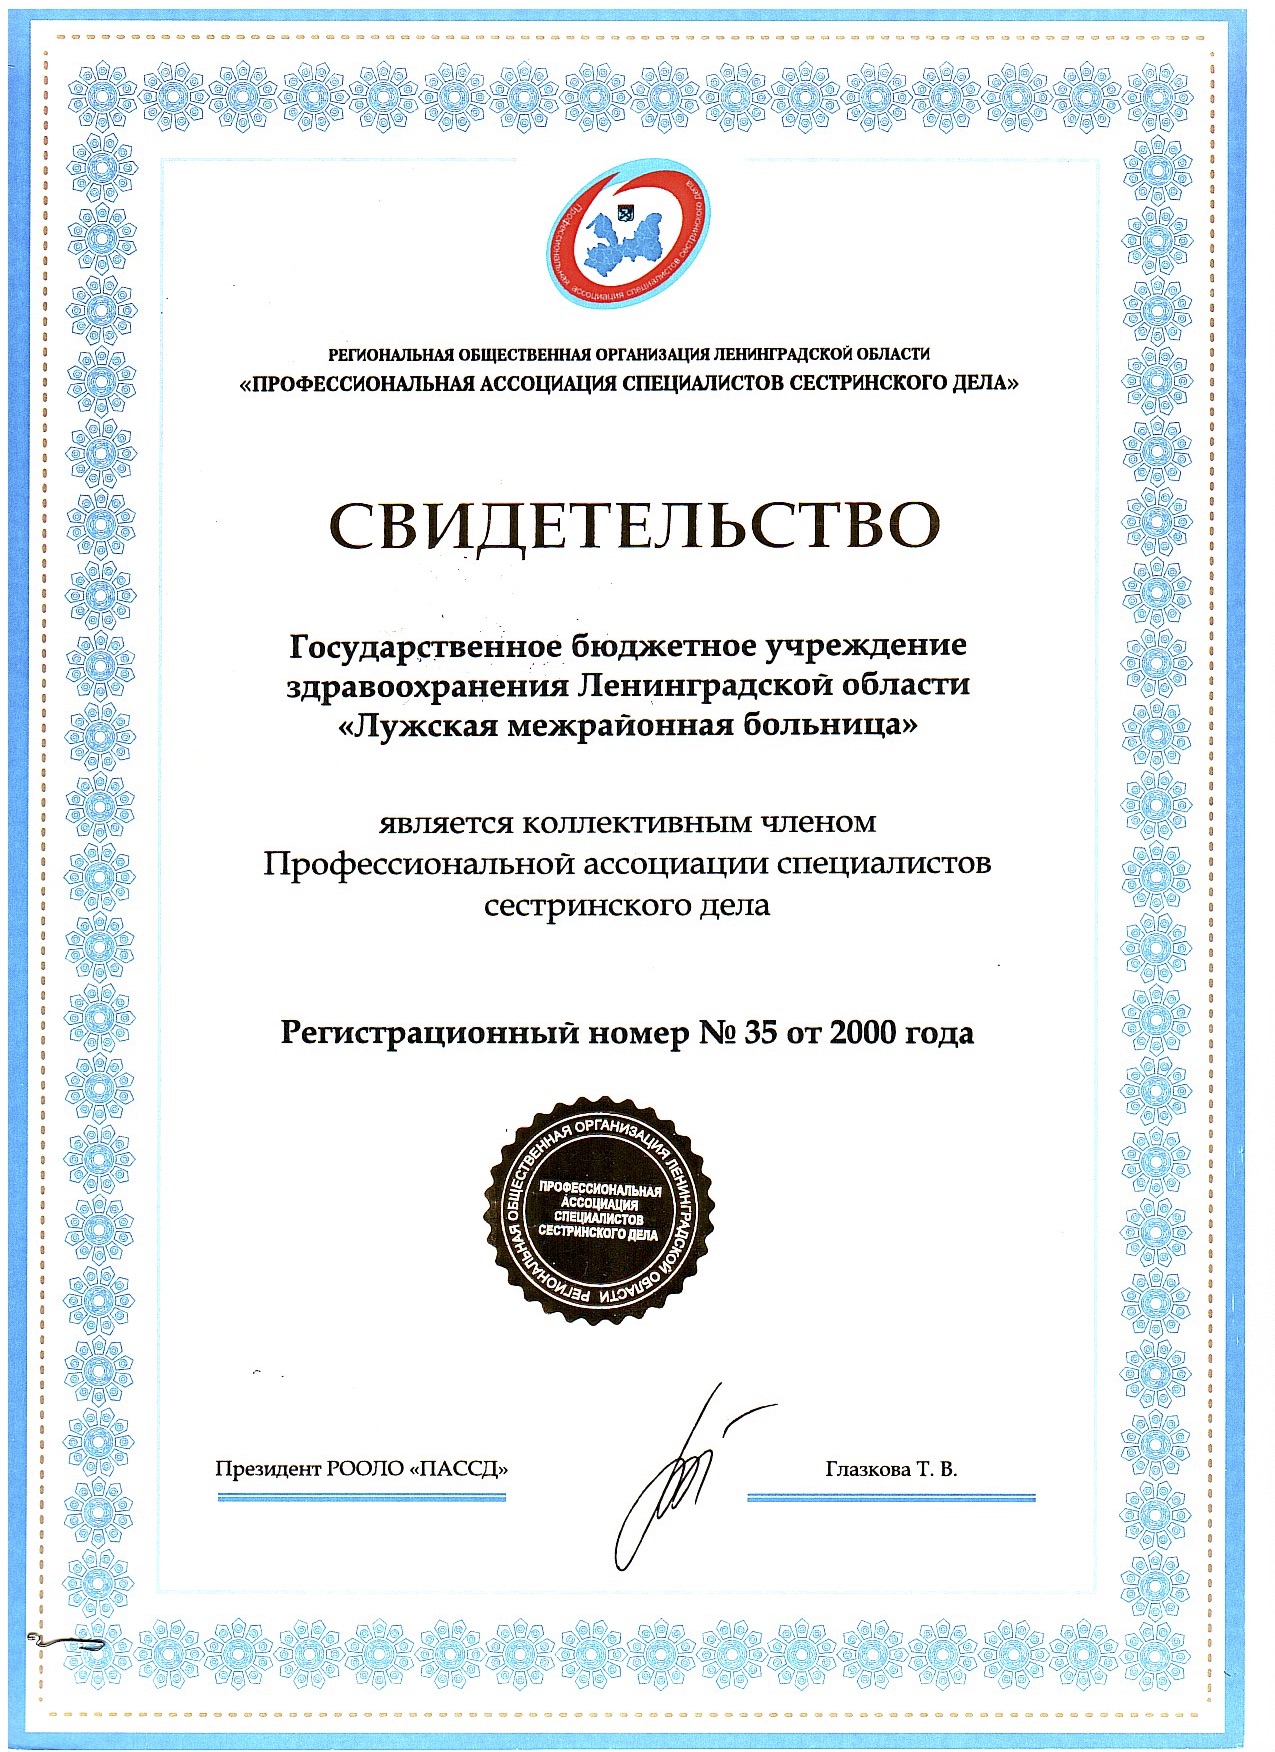 ГБУЗ ЛО "Лужская МБ": сертификат